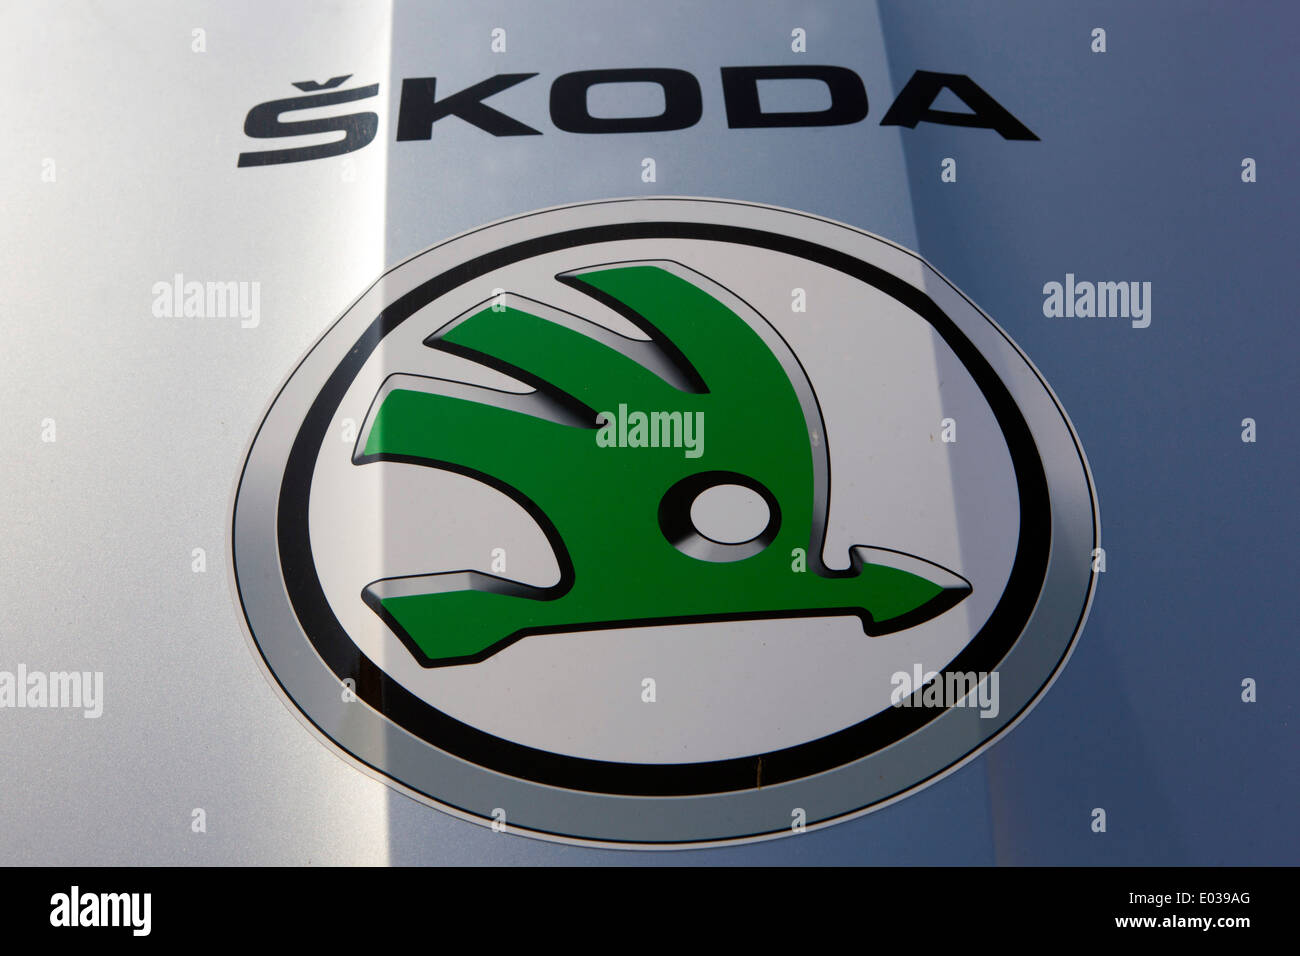 Skoda sign logo brand, badge Stock Photo